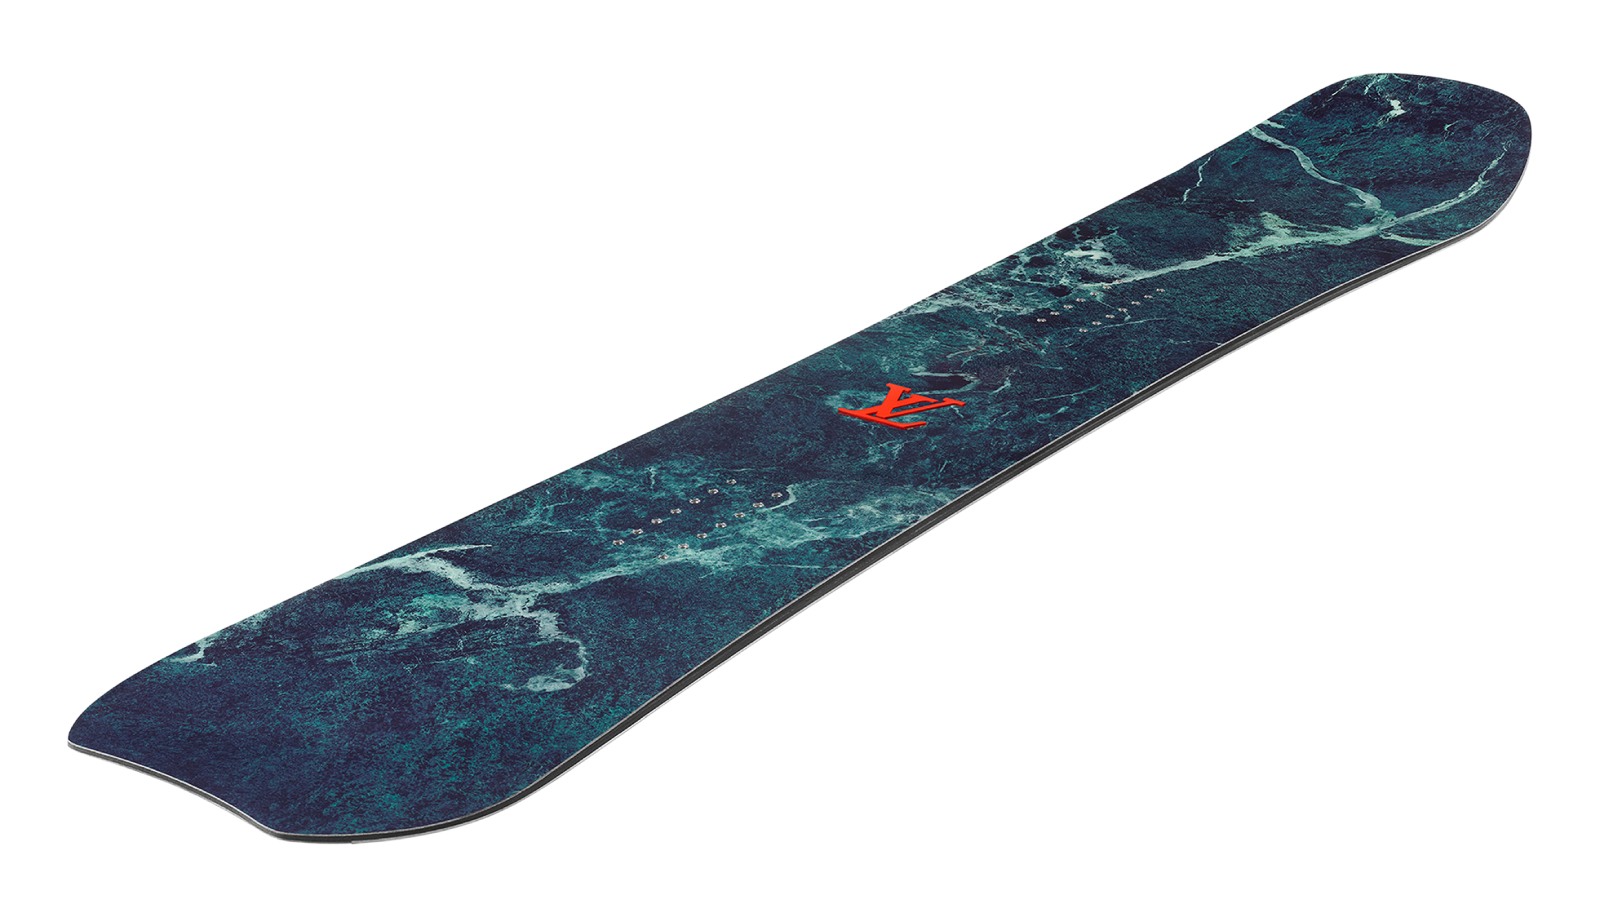 Louis Vuitton reinventa el snowboard con su tabla estampada en mármol